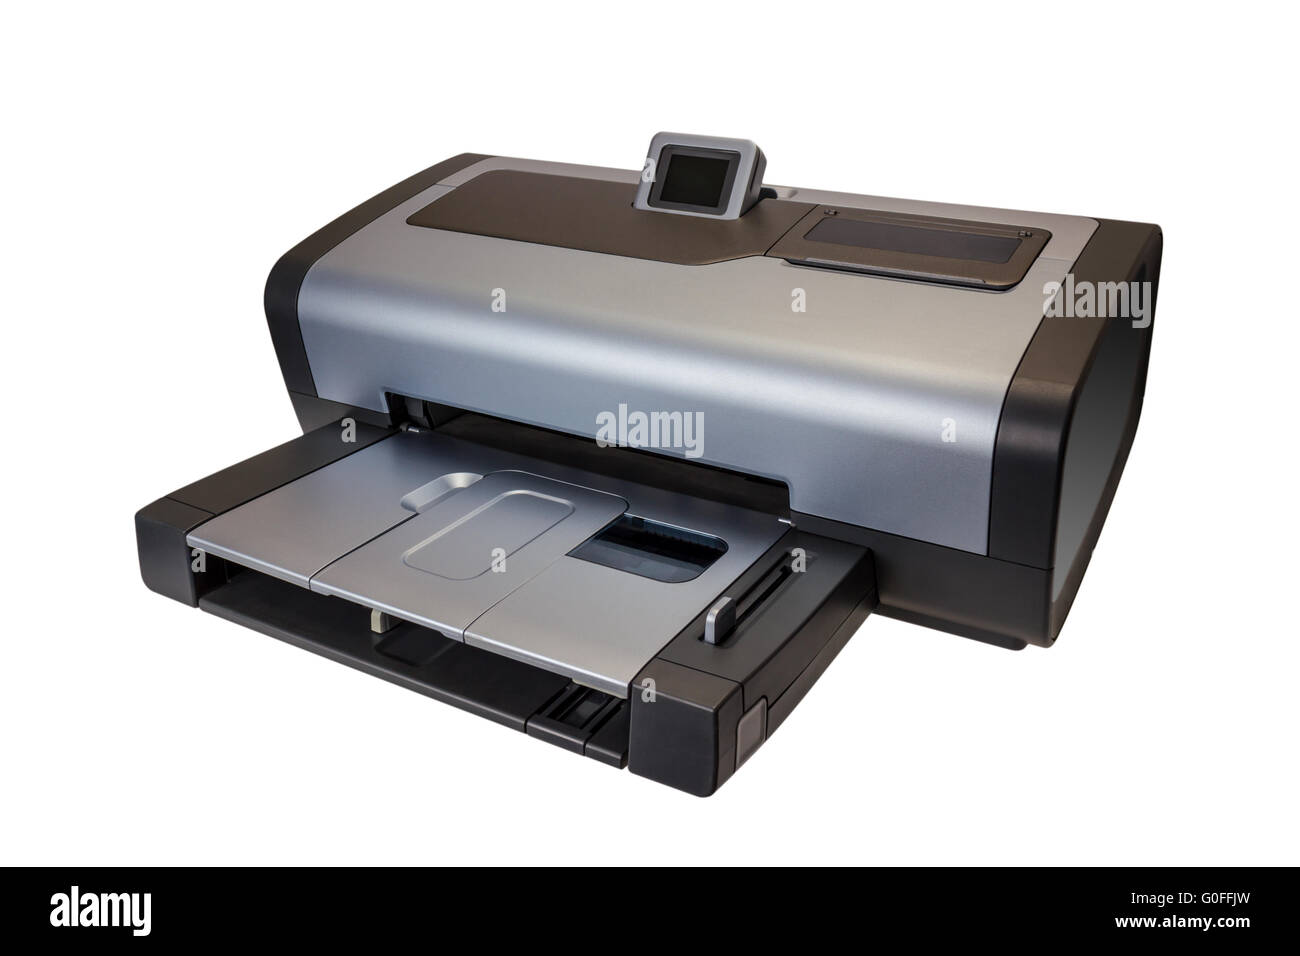 Stampante a getto d'inchiostro electronics equipment Immagini senza sfondo  e Foto Stock ritagliate - Alamy